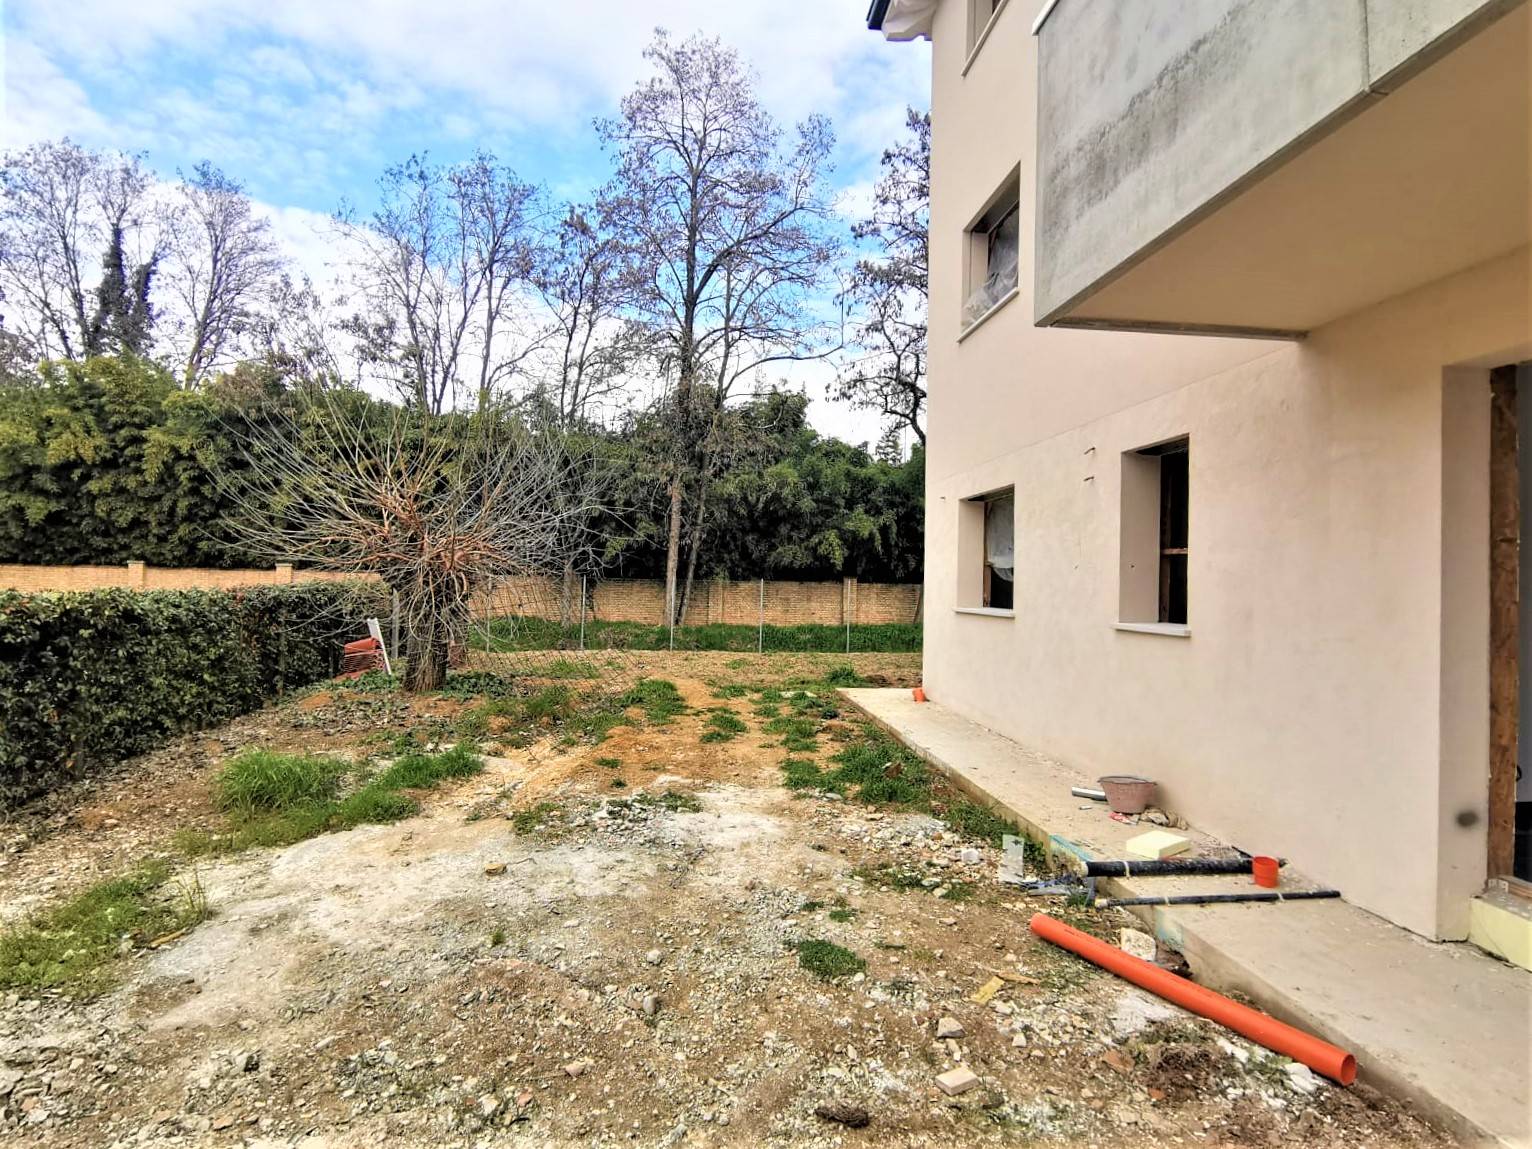 Appartamento in vendita a Spinea, 3 locali, zona Località: GRASPO DUVA, prezzo € 300.000 | PortaleAgenzieImmobiliari.it